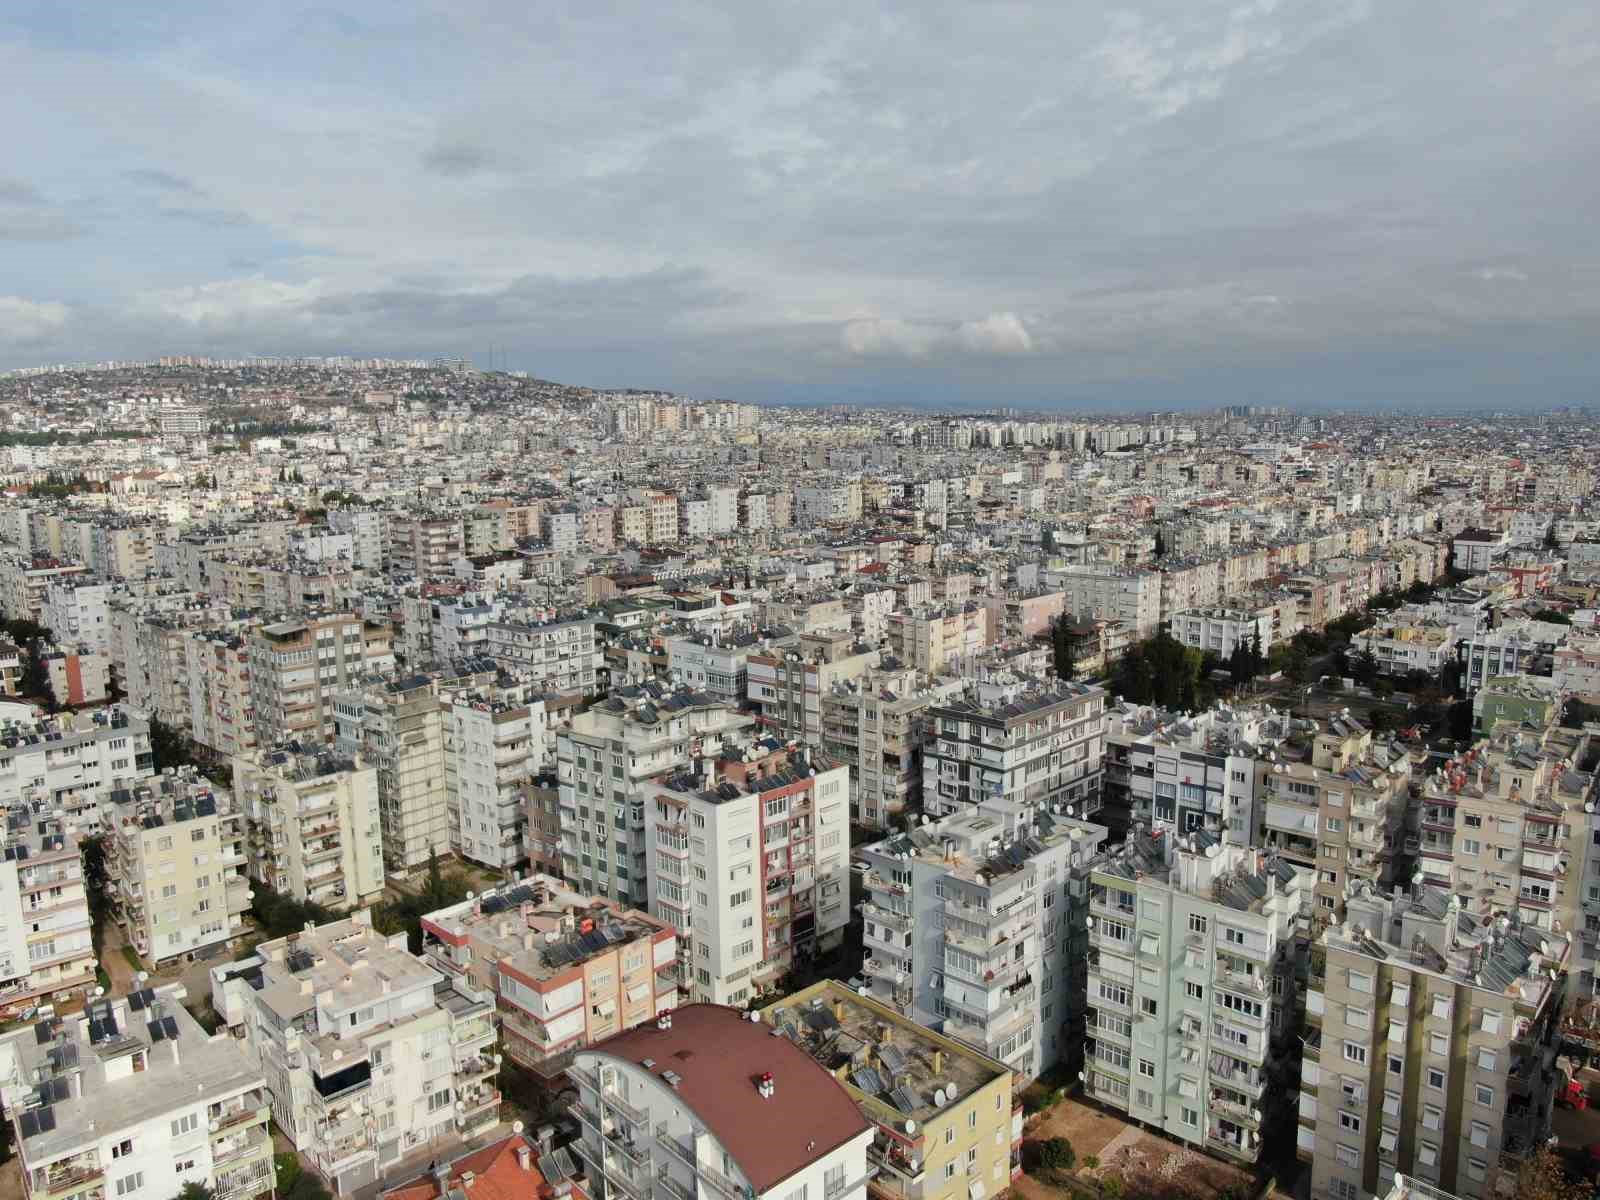 Konut satışlarının yüzde 40’a yakın düştüğü Antalya’da tersine göç başladı
